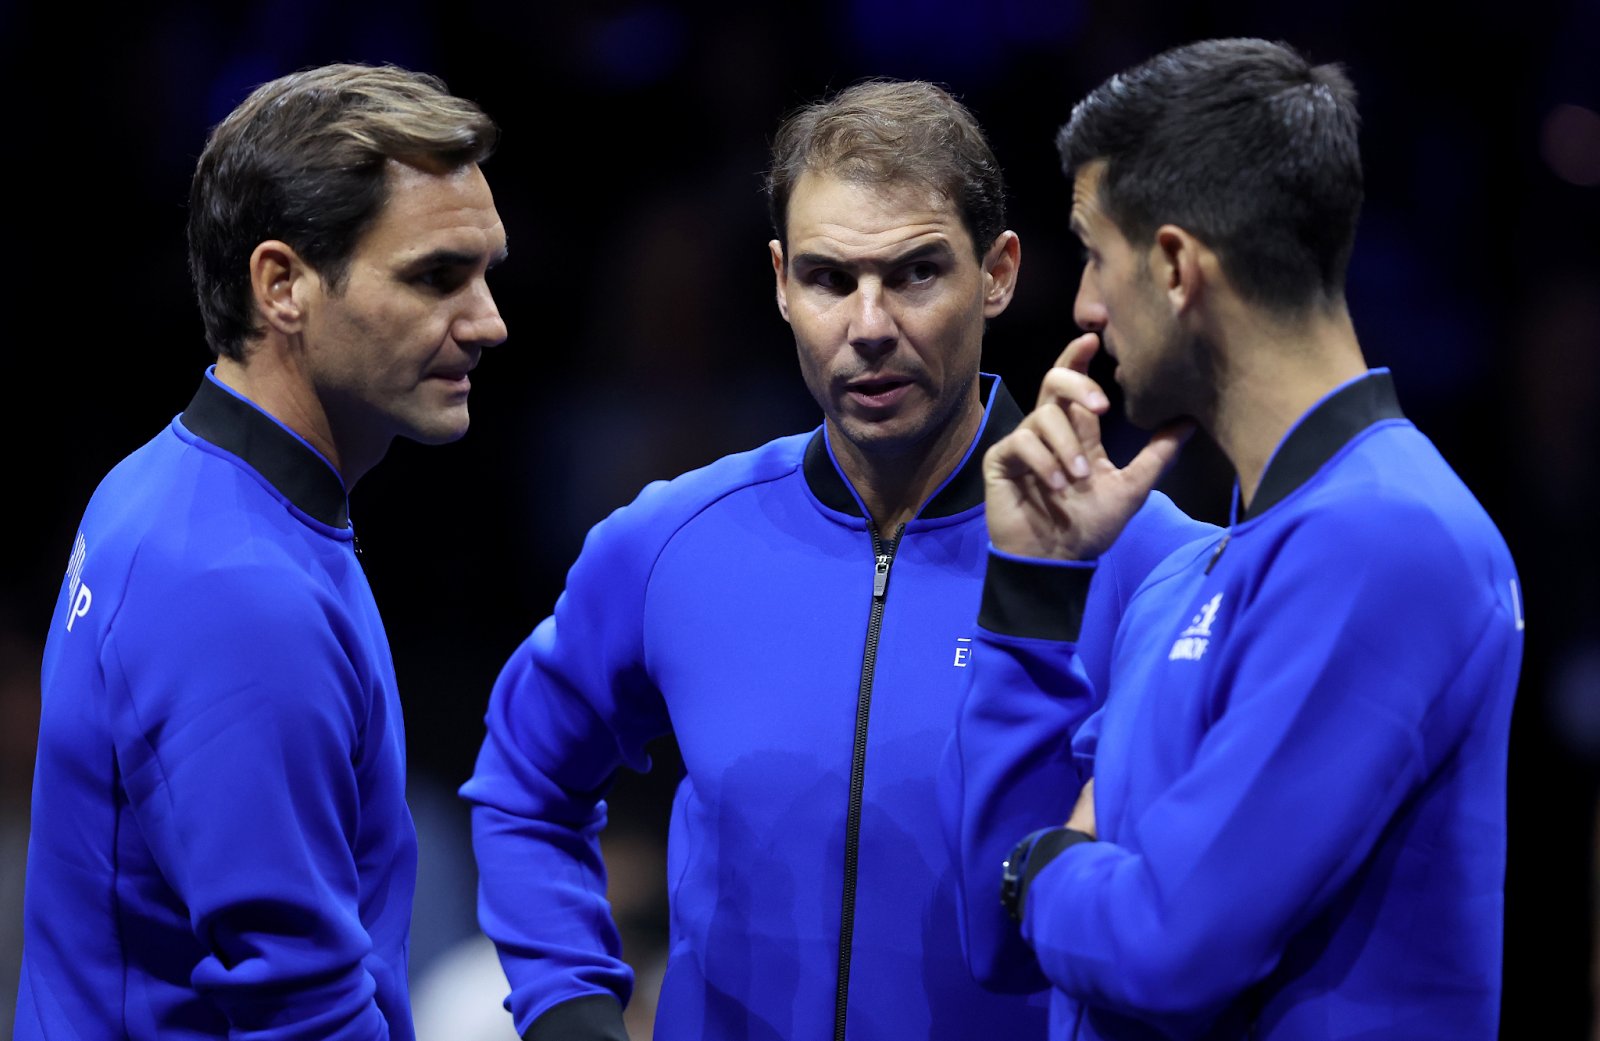 Djokovic, Nadal, and Federer standing together